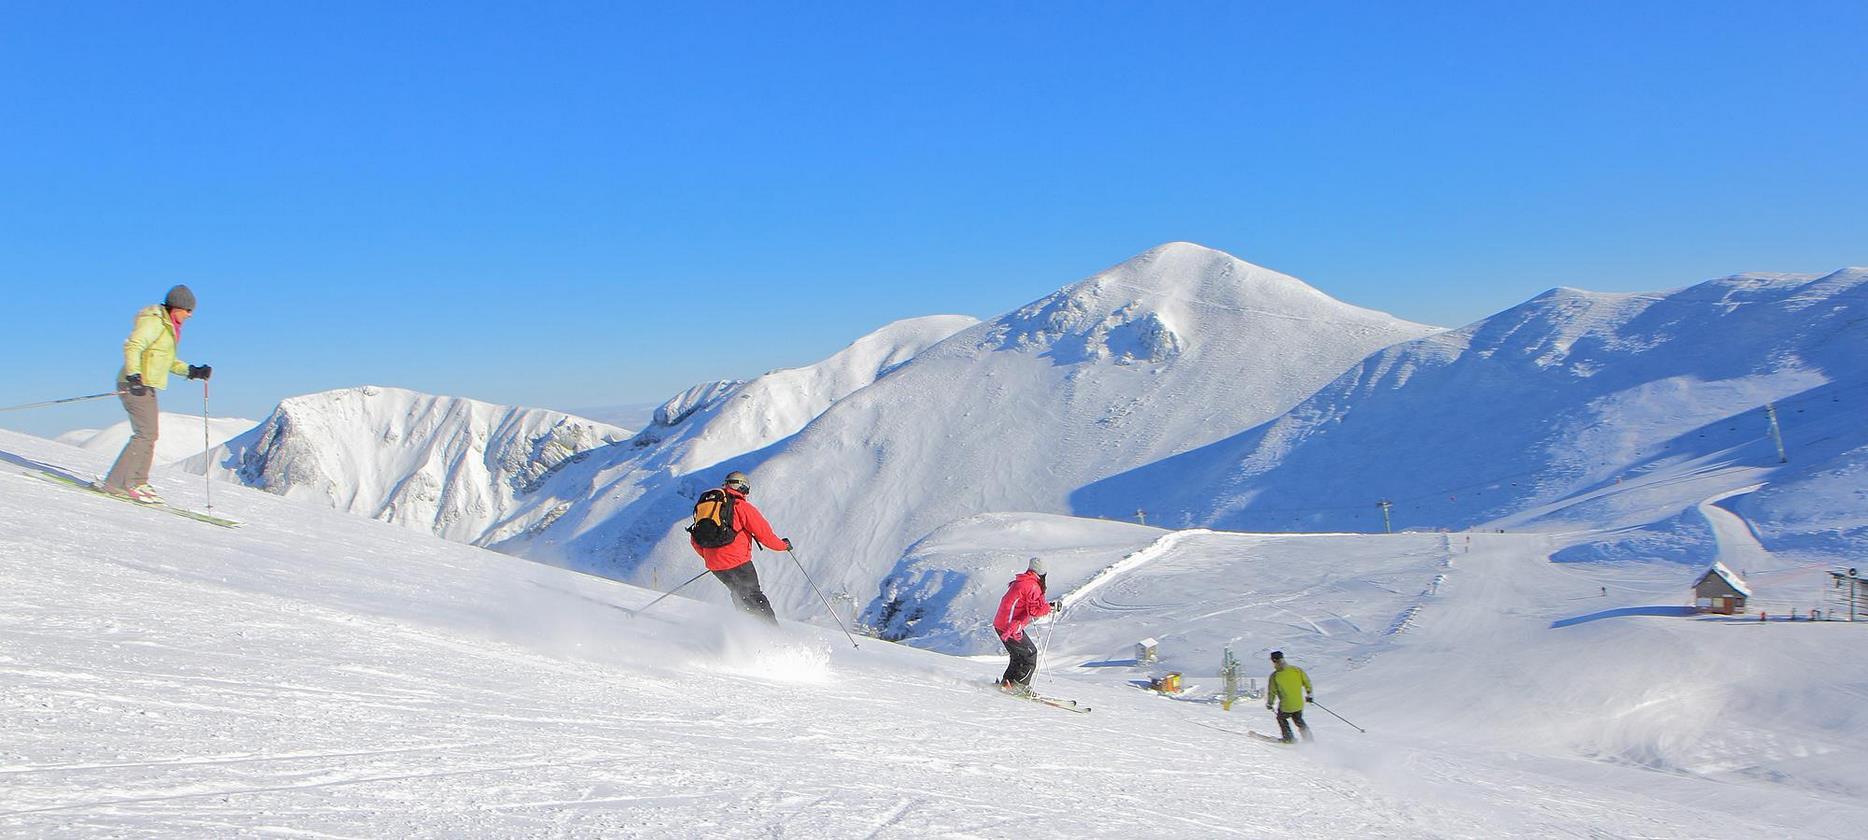 Massif du Sancy - descente a ski sur le Sancy